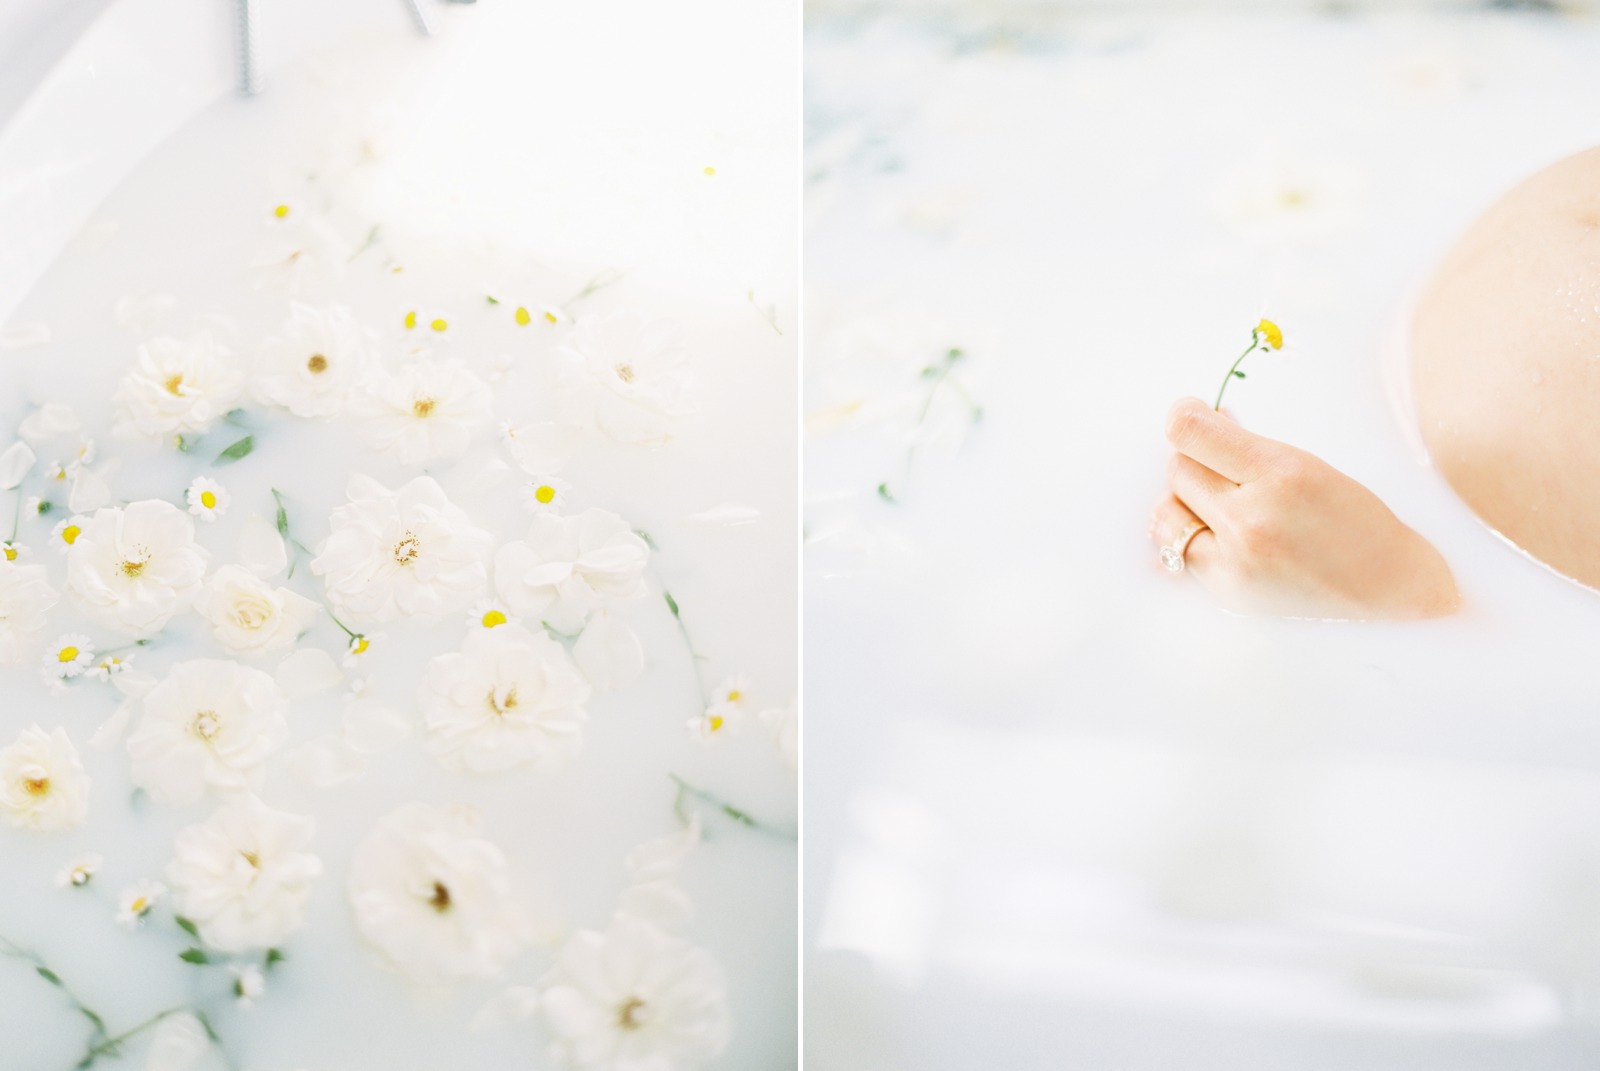 Milk Bath with Flowers